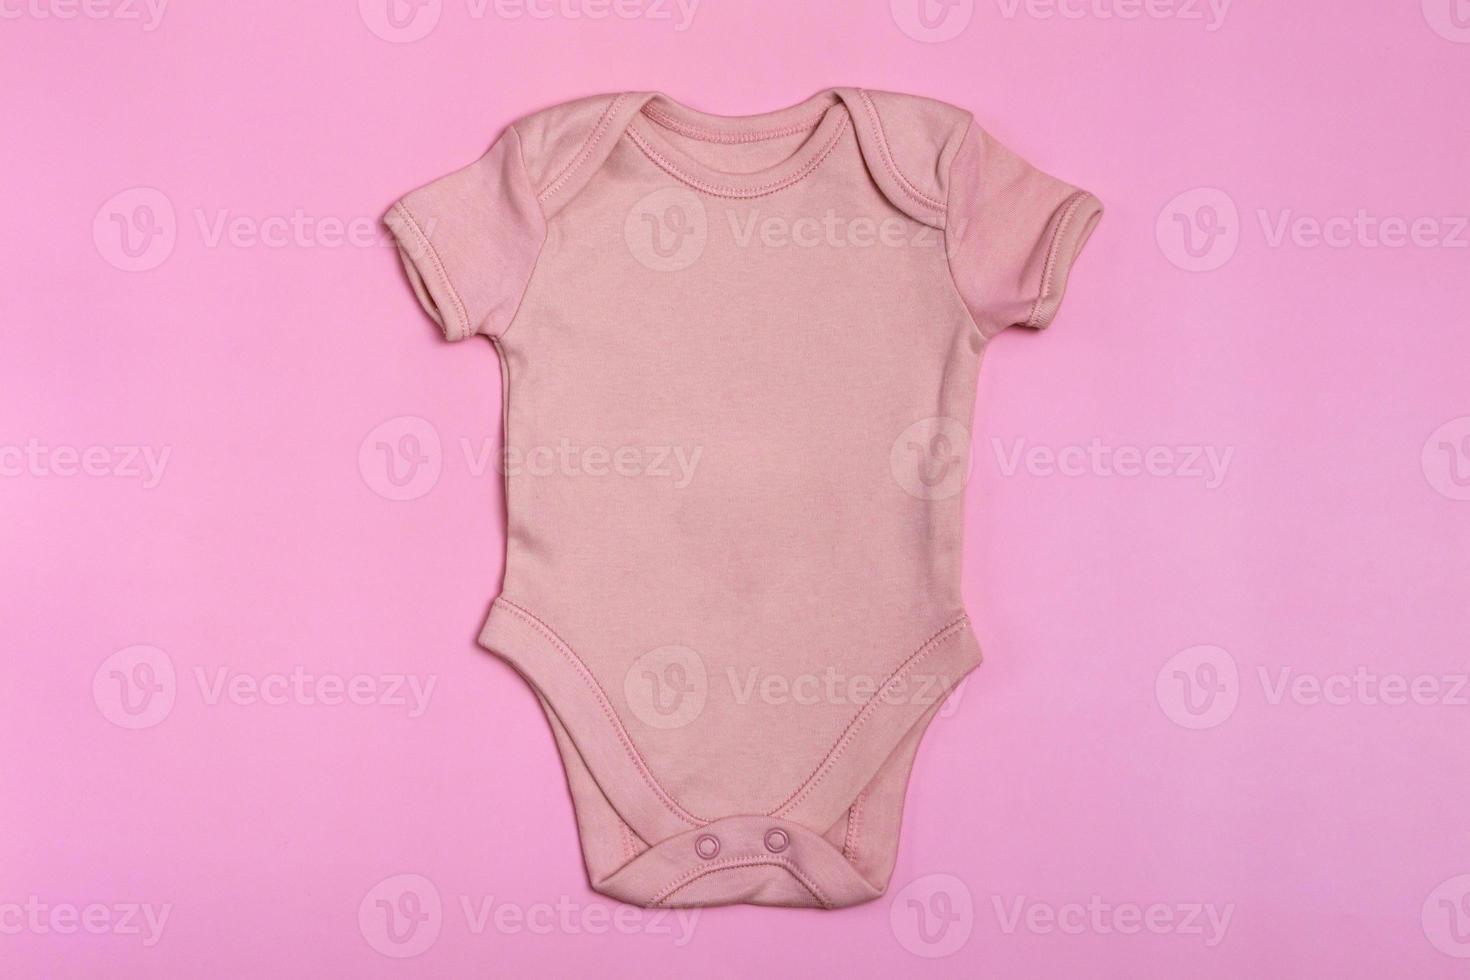 modèle de body bébé blanc rose, maquette en gros plan sur fond rose. body bébé, combinaison pour nouveau-nés. vue d'en-haut photo